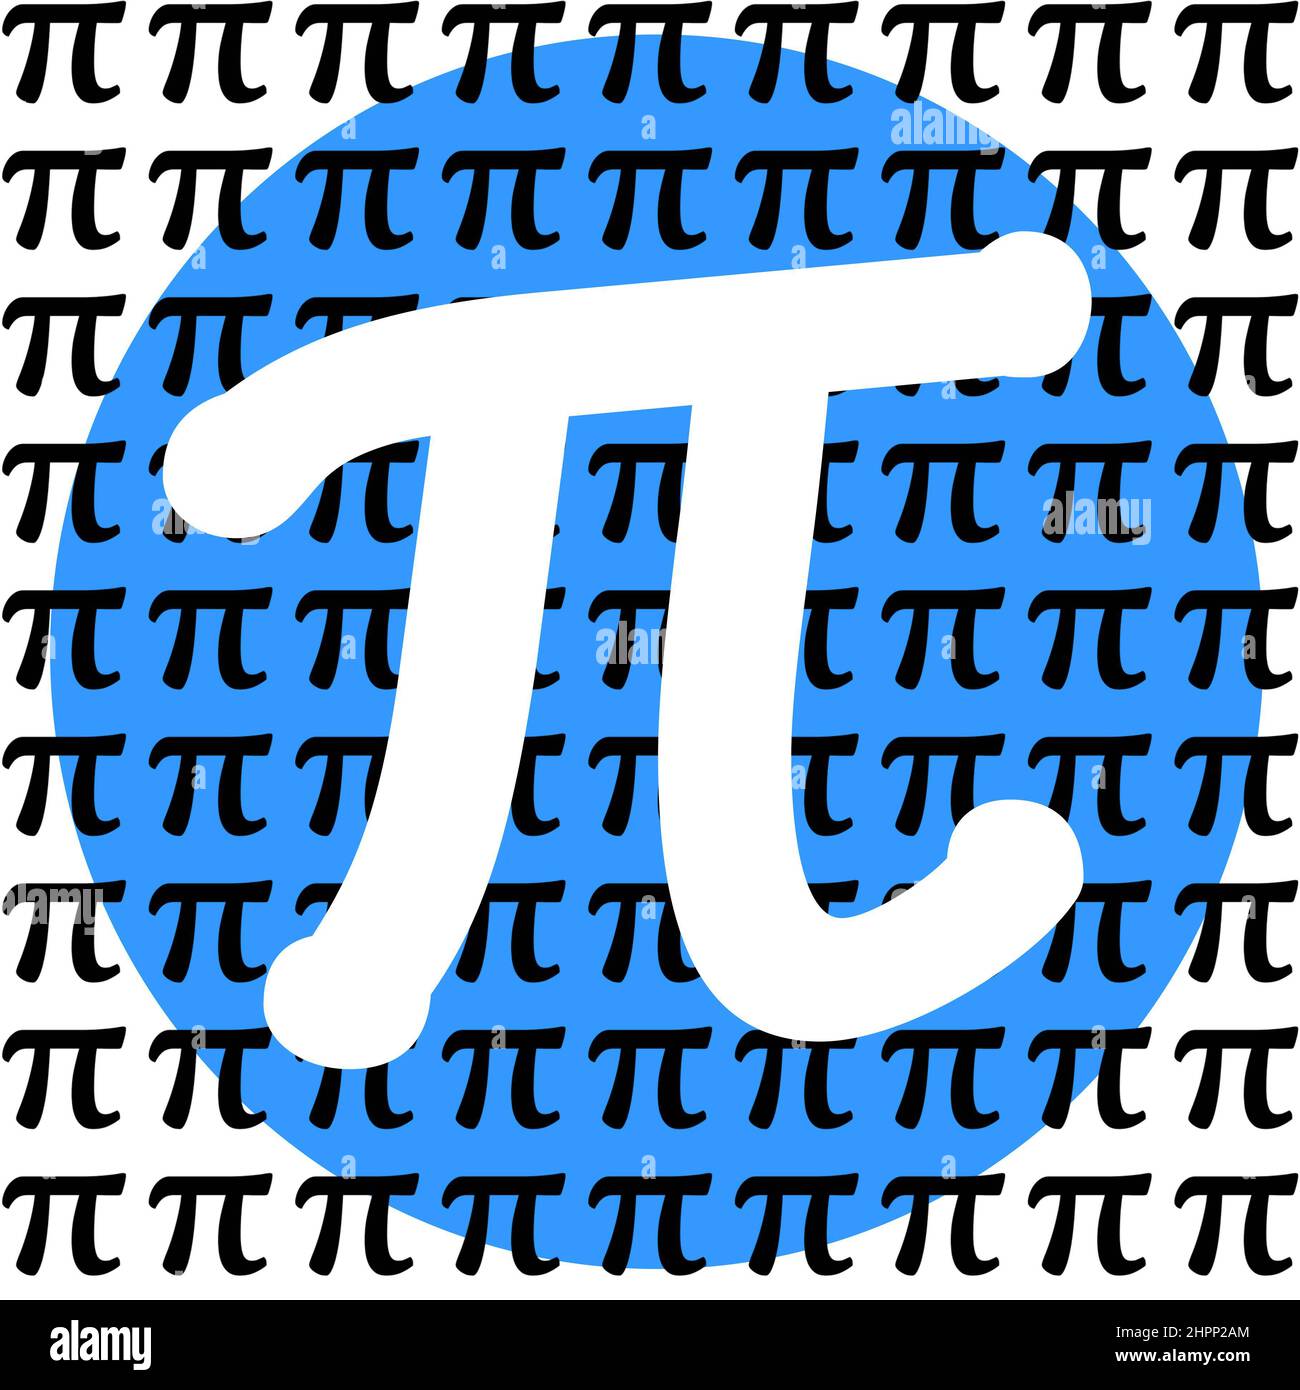 Weißes Pi-Zeichen im blauen Kreis mit kleineren schwarzen pi-Symbolen auf der ganzen grafischen Typografie für den Pi Day, ein schrulliger Feiertag am 14. März, da pi 3,14 entspricht Stockfoto